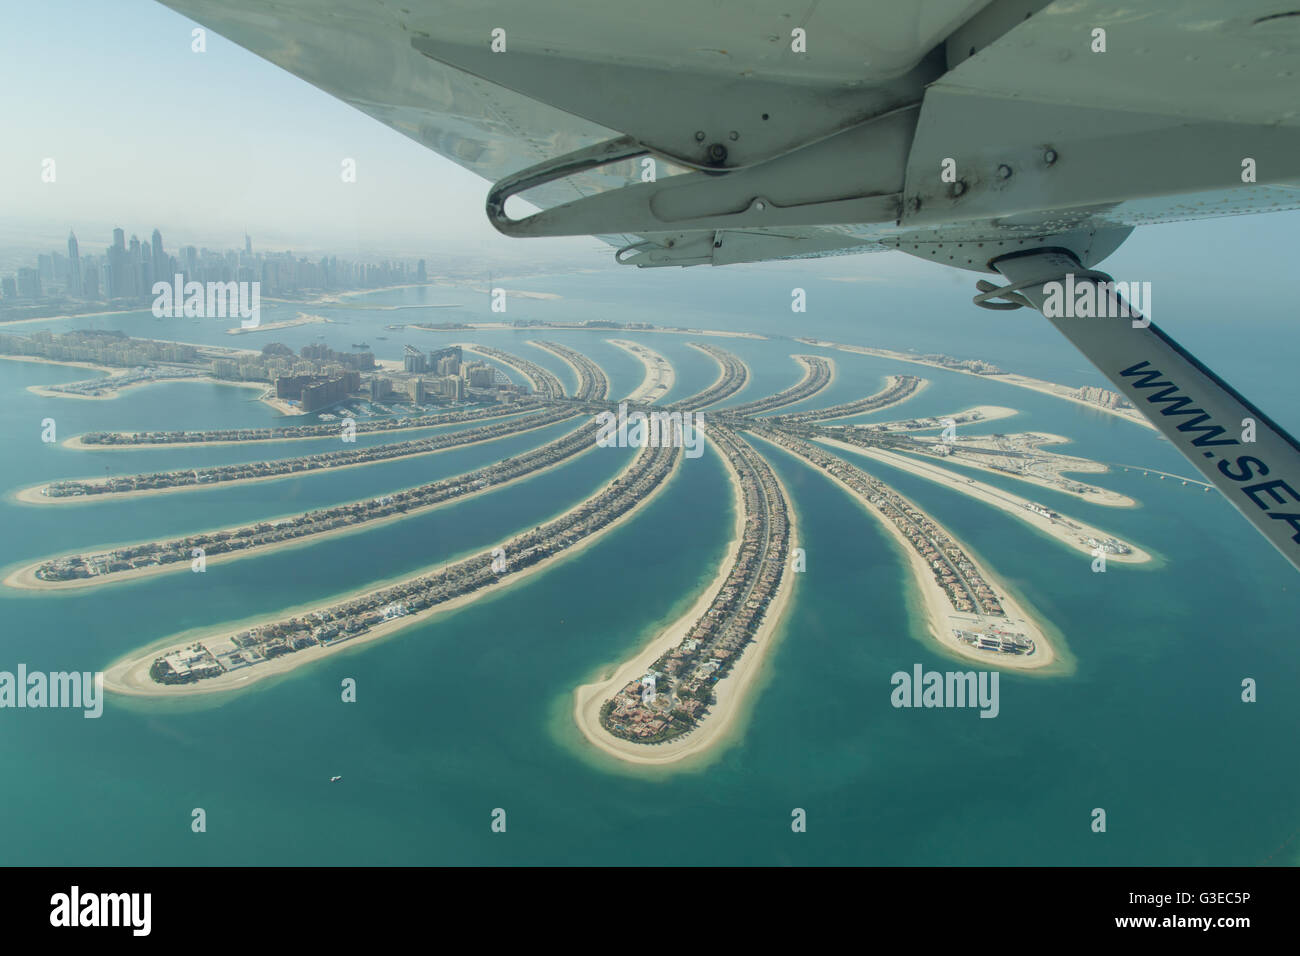 Dubai, Vereinigte Arabische Emirate - 17. Oktober 2014: Luftaufnahme der künstlichen Insel Palm Jumeirah von einem Wasserflugzeug. Stockfoto